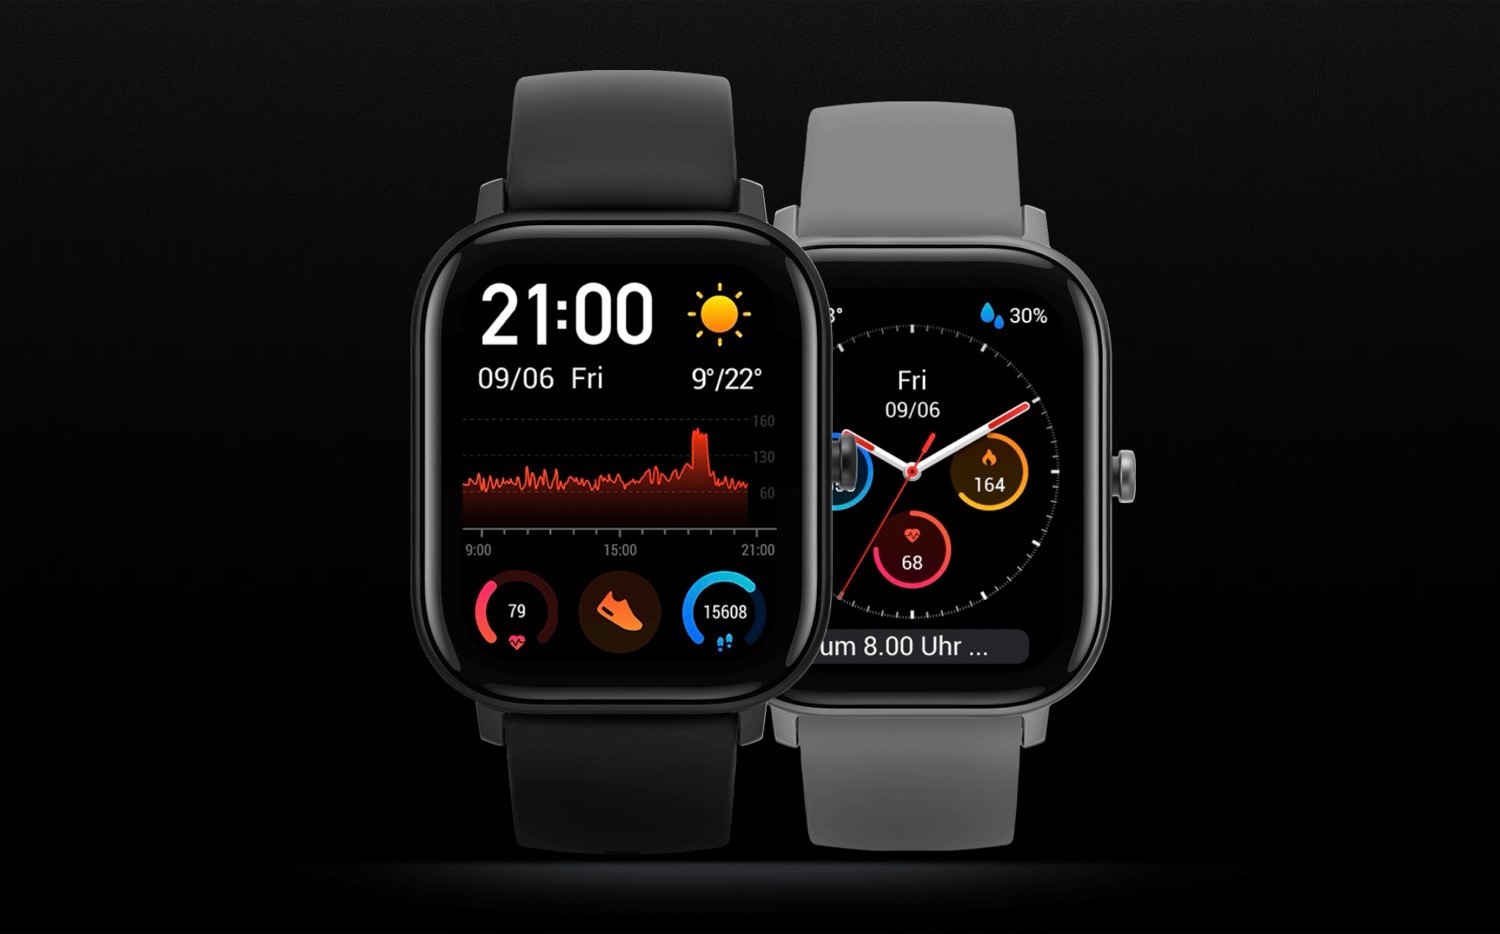 Relógio Amazfit GTS chega à China com design similar ao Apple Watch